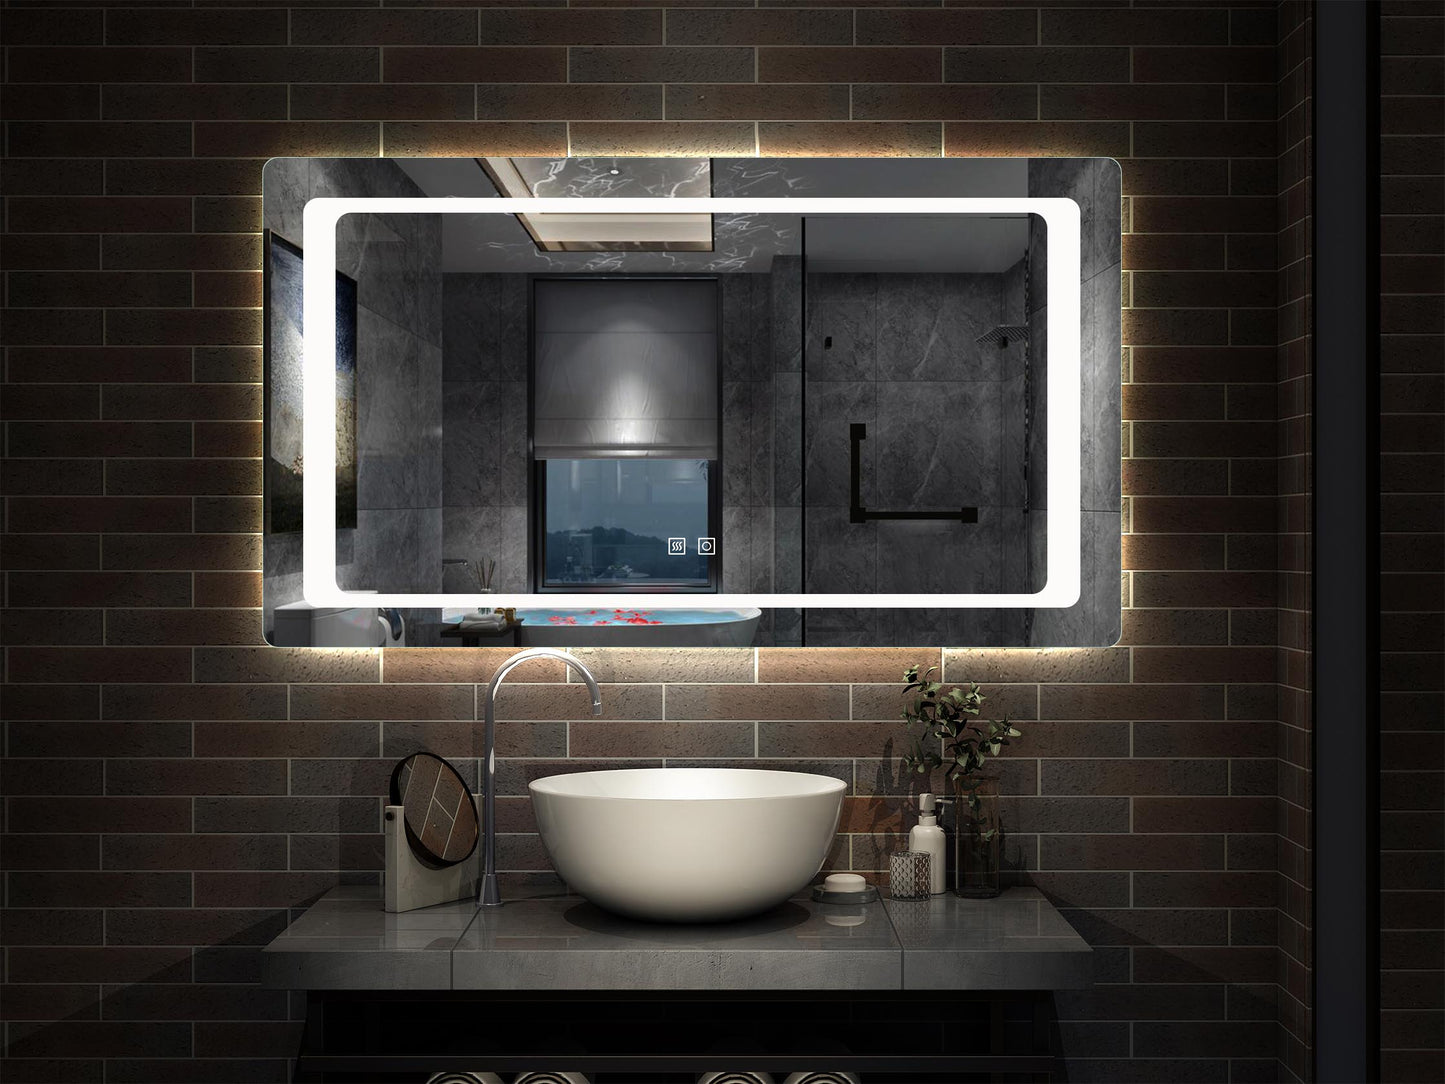 Espejo de Pared en Baño con Iluminación Blanca Fría(Brillo LED Envolvente). Espejo de Baño Antivaho + Dos botones Táctiles